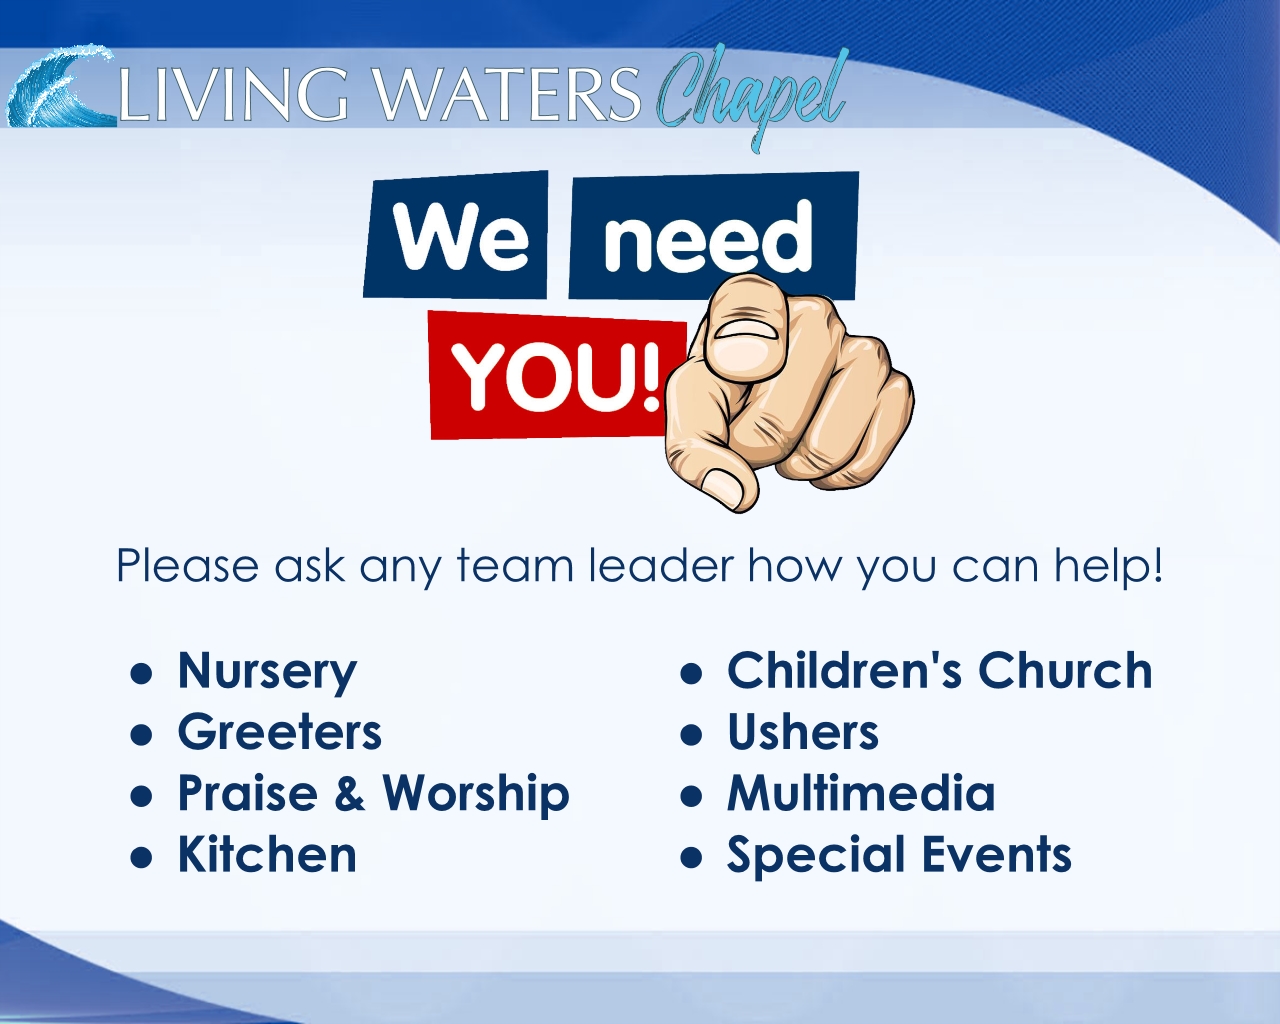 LWC Needs YOU!